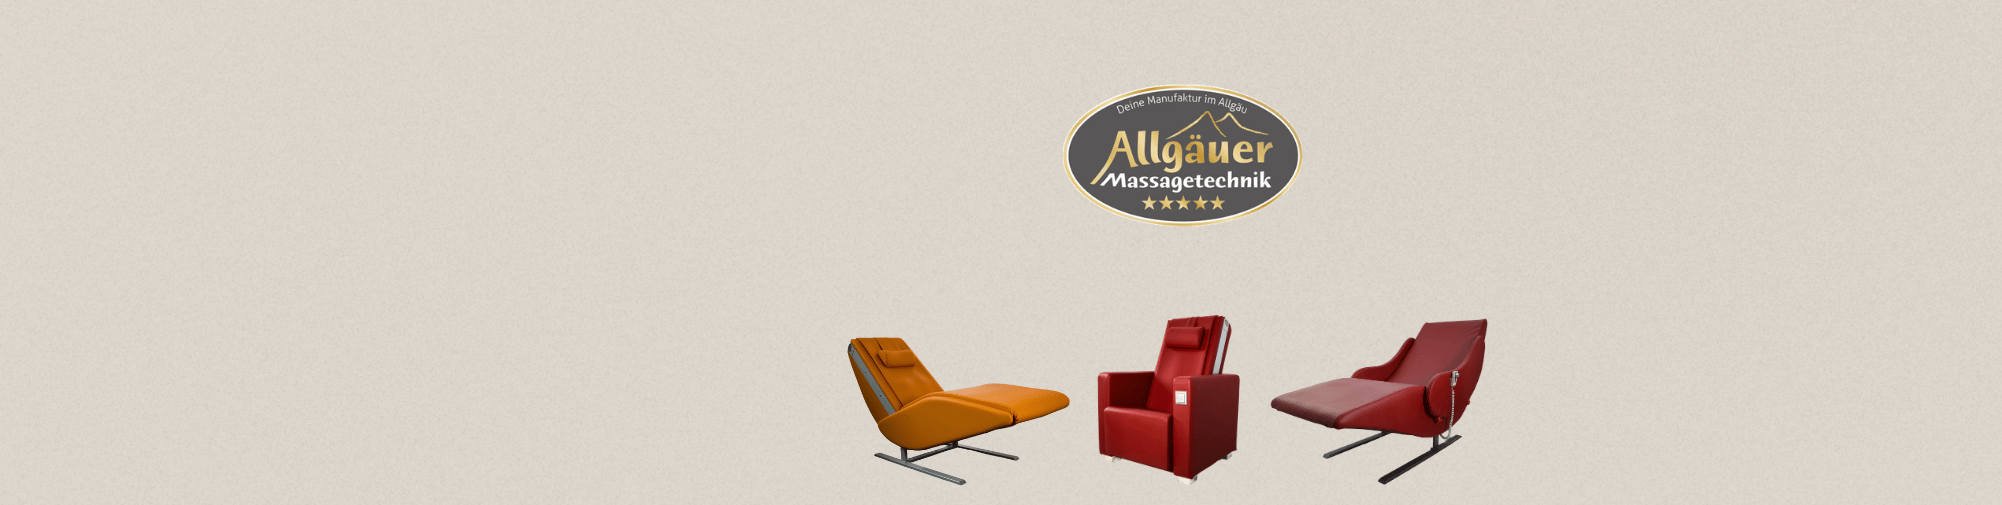 Allgäuer Massagetechnik - Svijet masažnih stolica